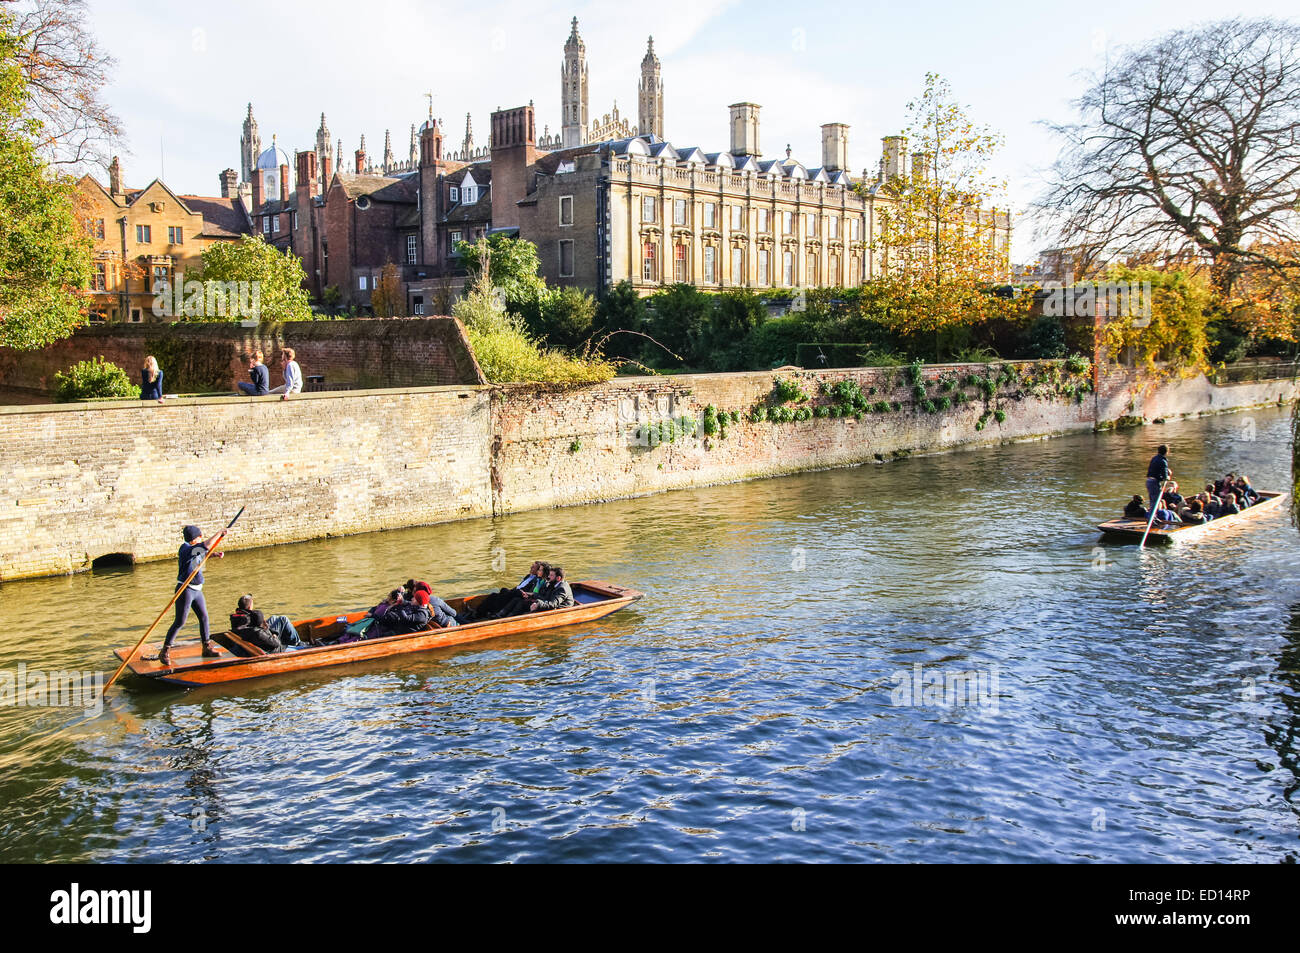 Des gens qui puntent sur la rivière Cam à Cambridge avec Clare College bâtiment en arrière-plan, Cambridgeshire Angleterre Royaume-Uni Banque D'Images